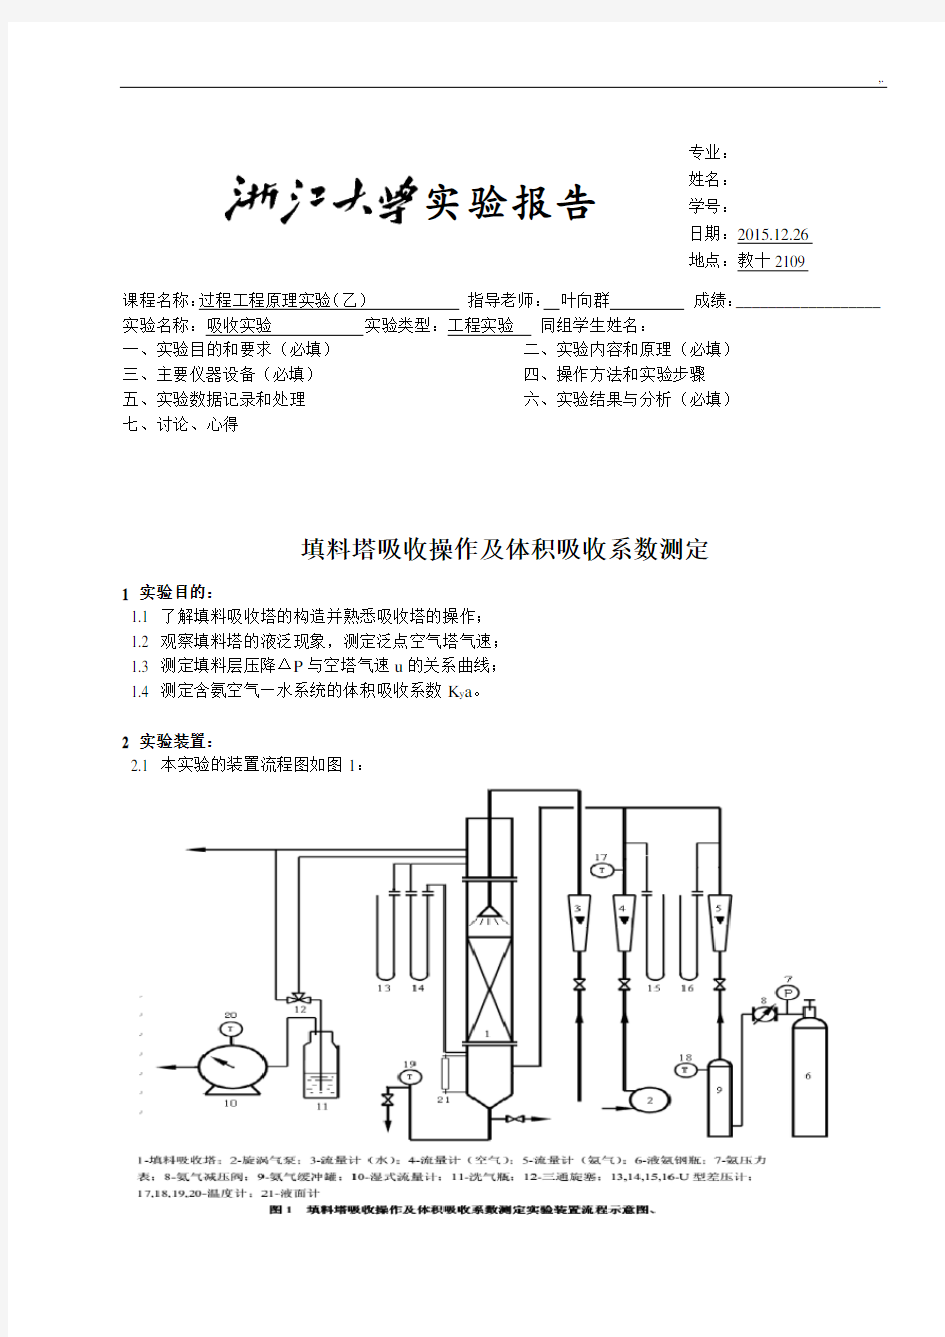 浙江大学化工基础原理实验-填料塔吸收实验报告